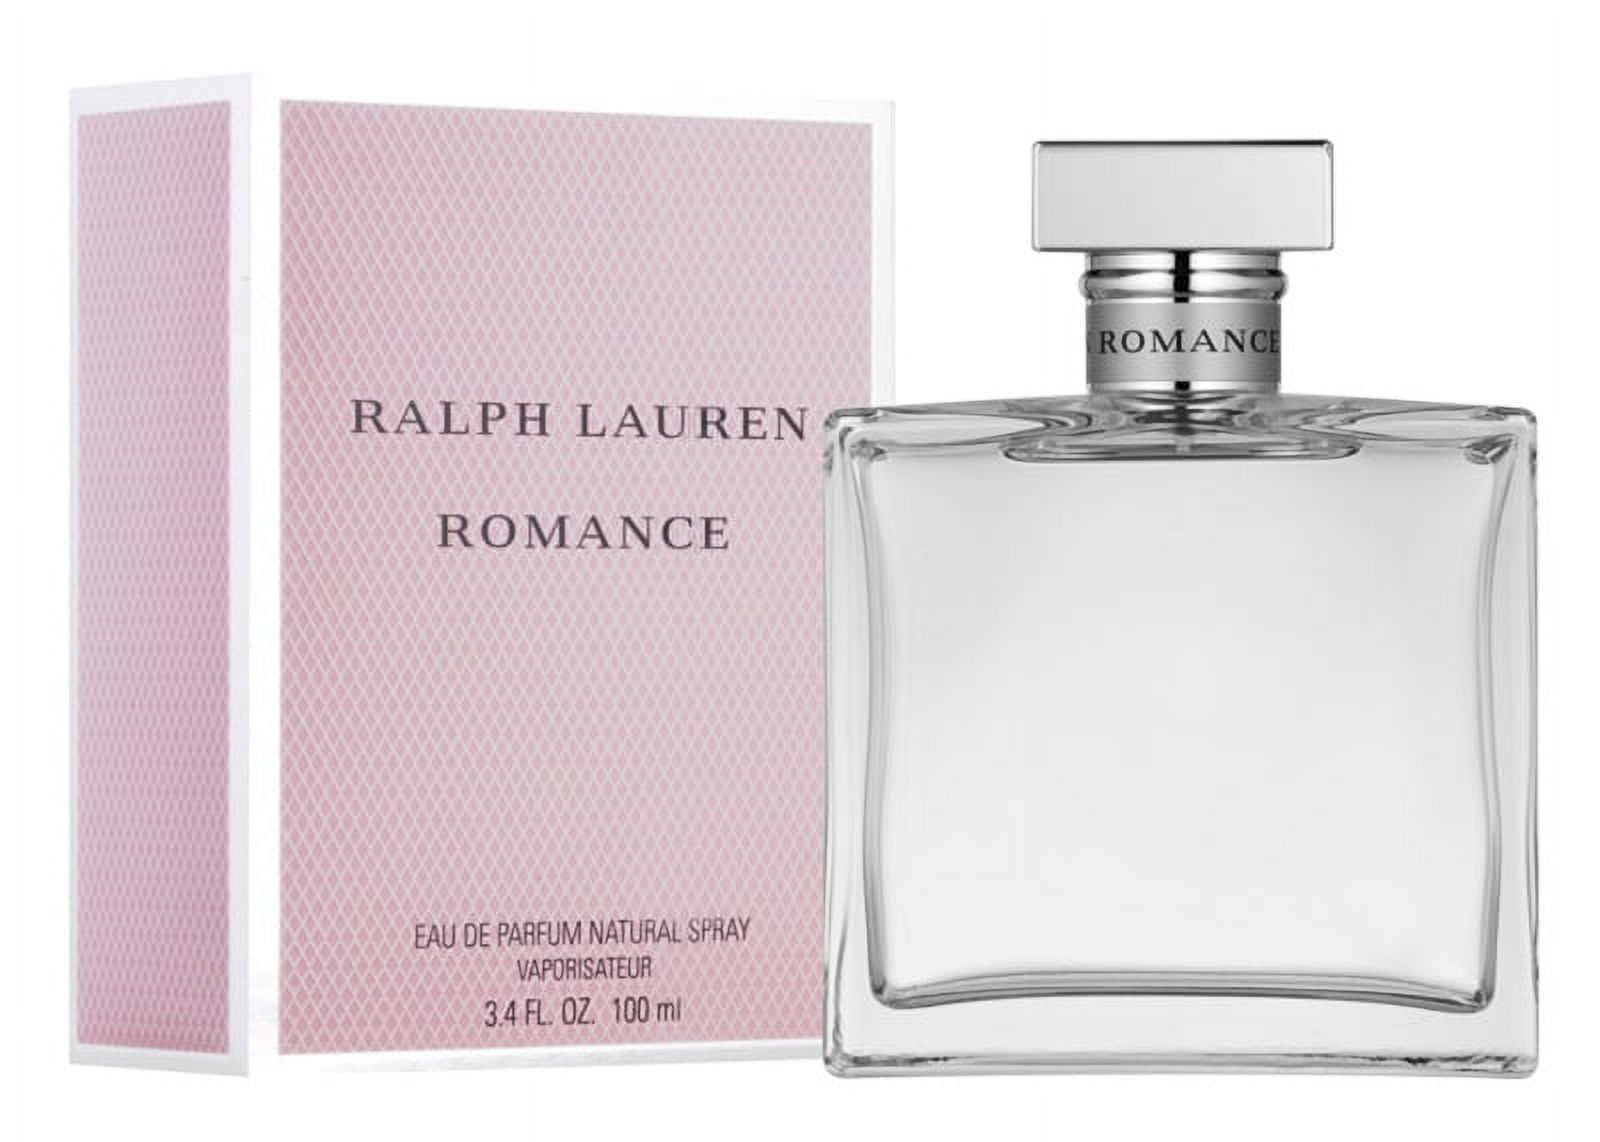 Romance by Ralph Lauren Eau de Parfum 3.4 Oz *EN - Walmart.com